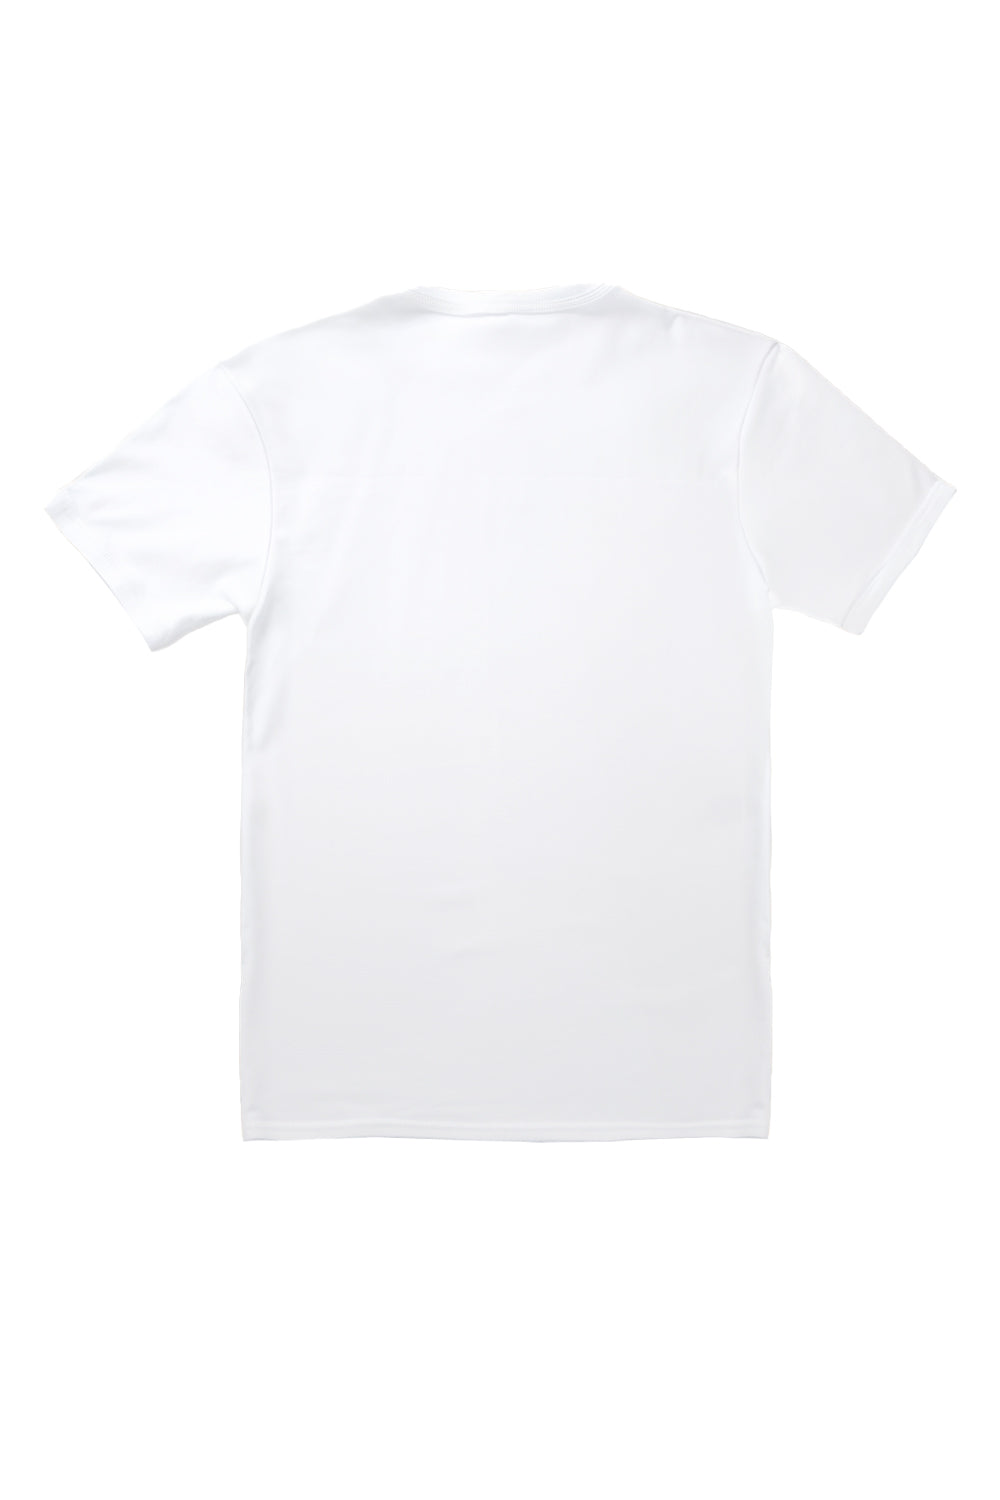 New York T-Shirt in White (Custom Packs)